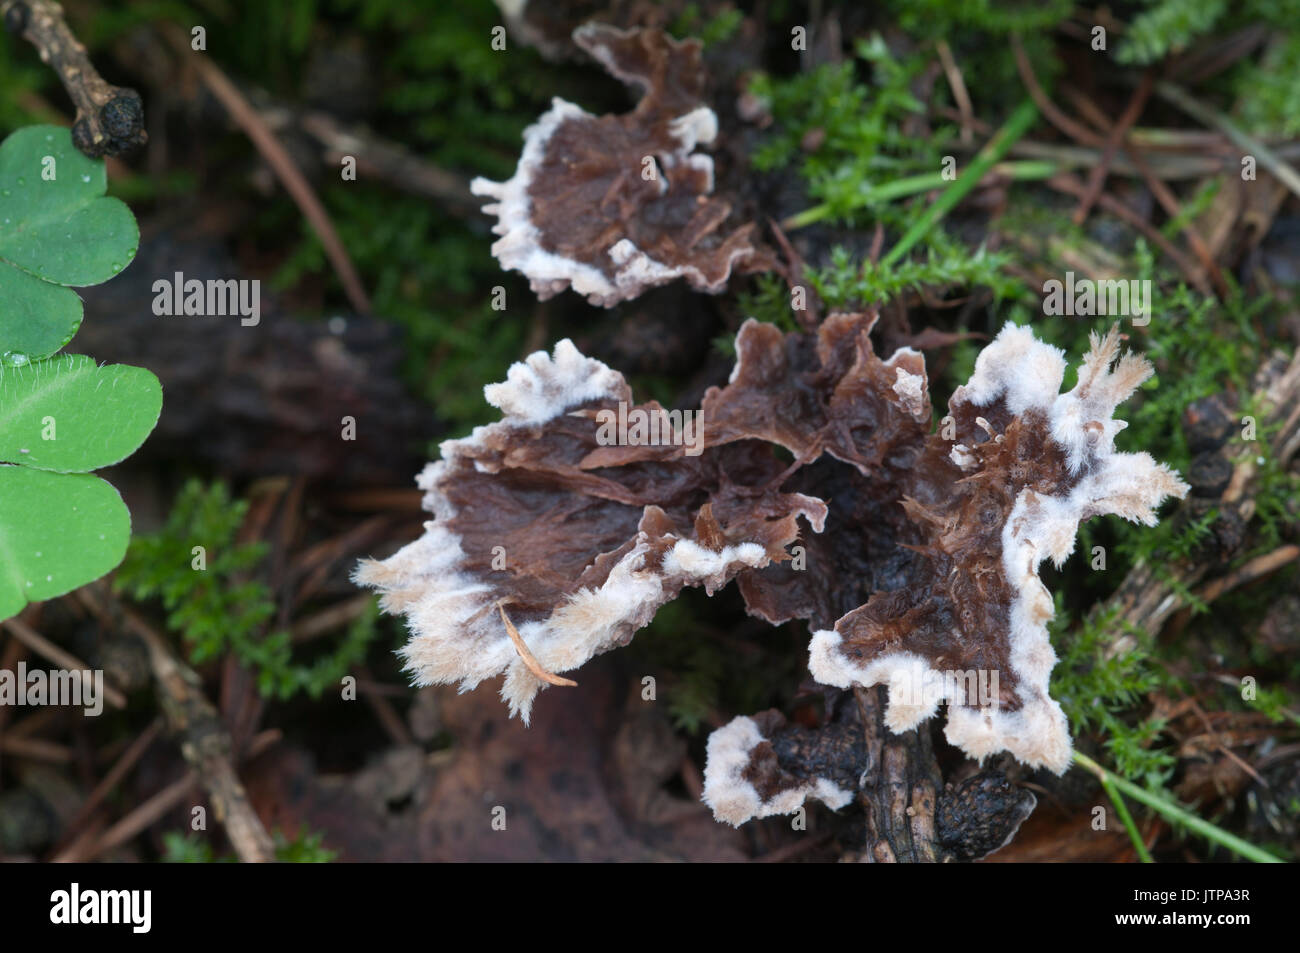 Thelephora penicillata mushrooms on an old stump Stock Photo